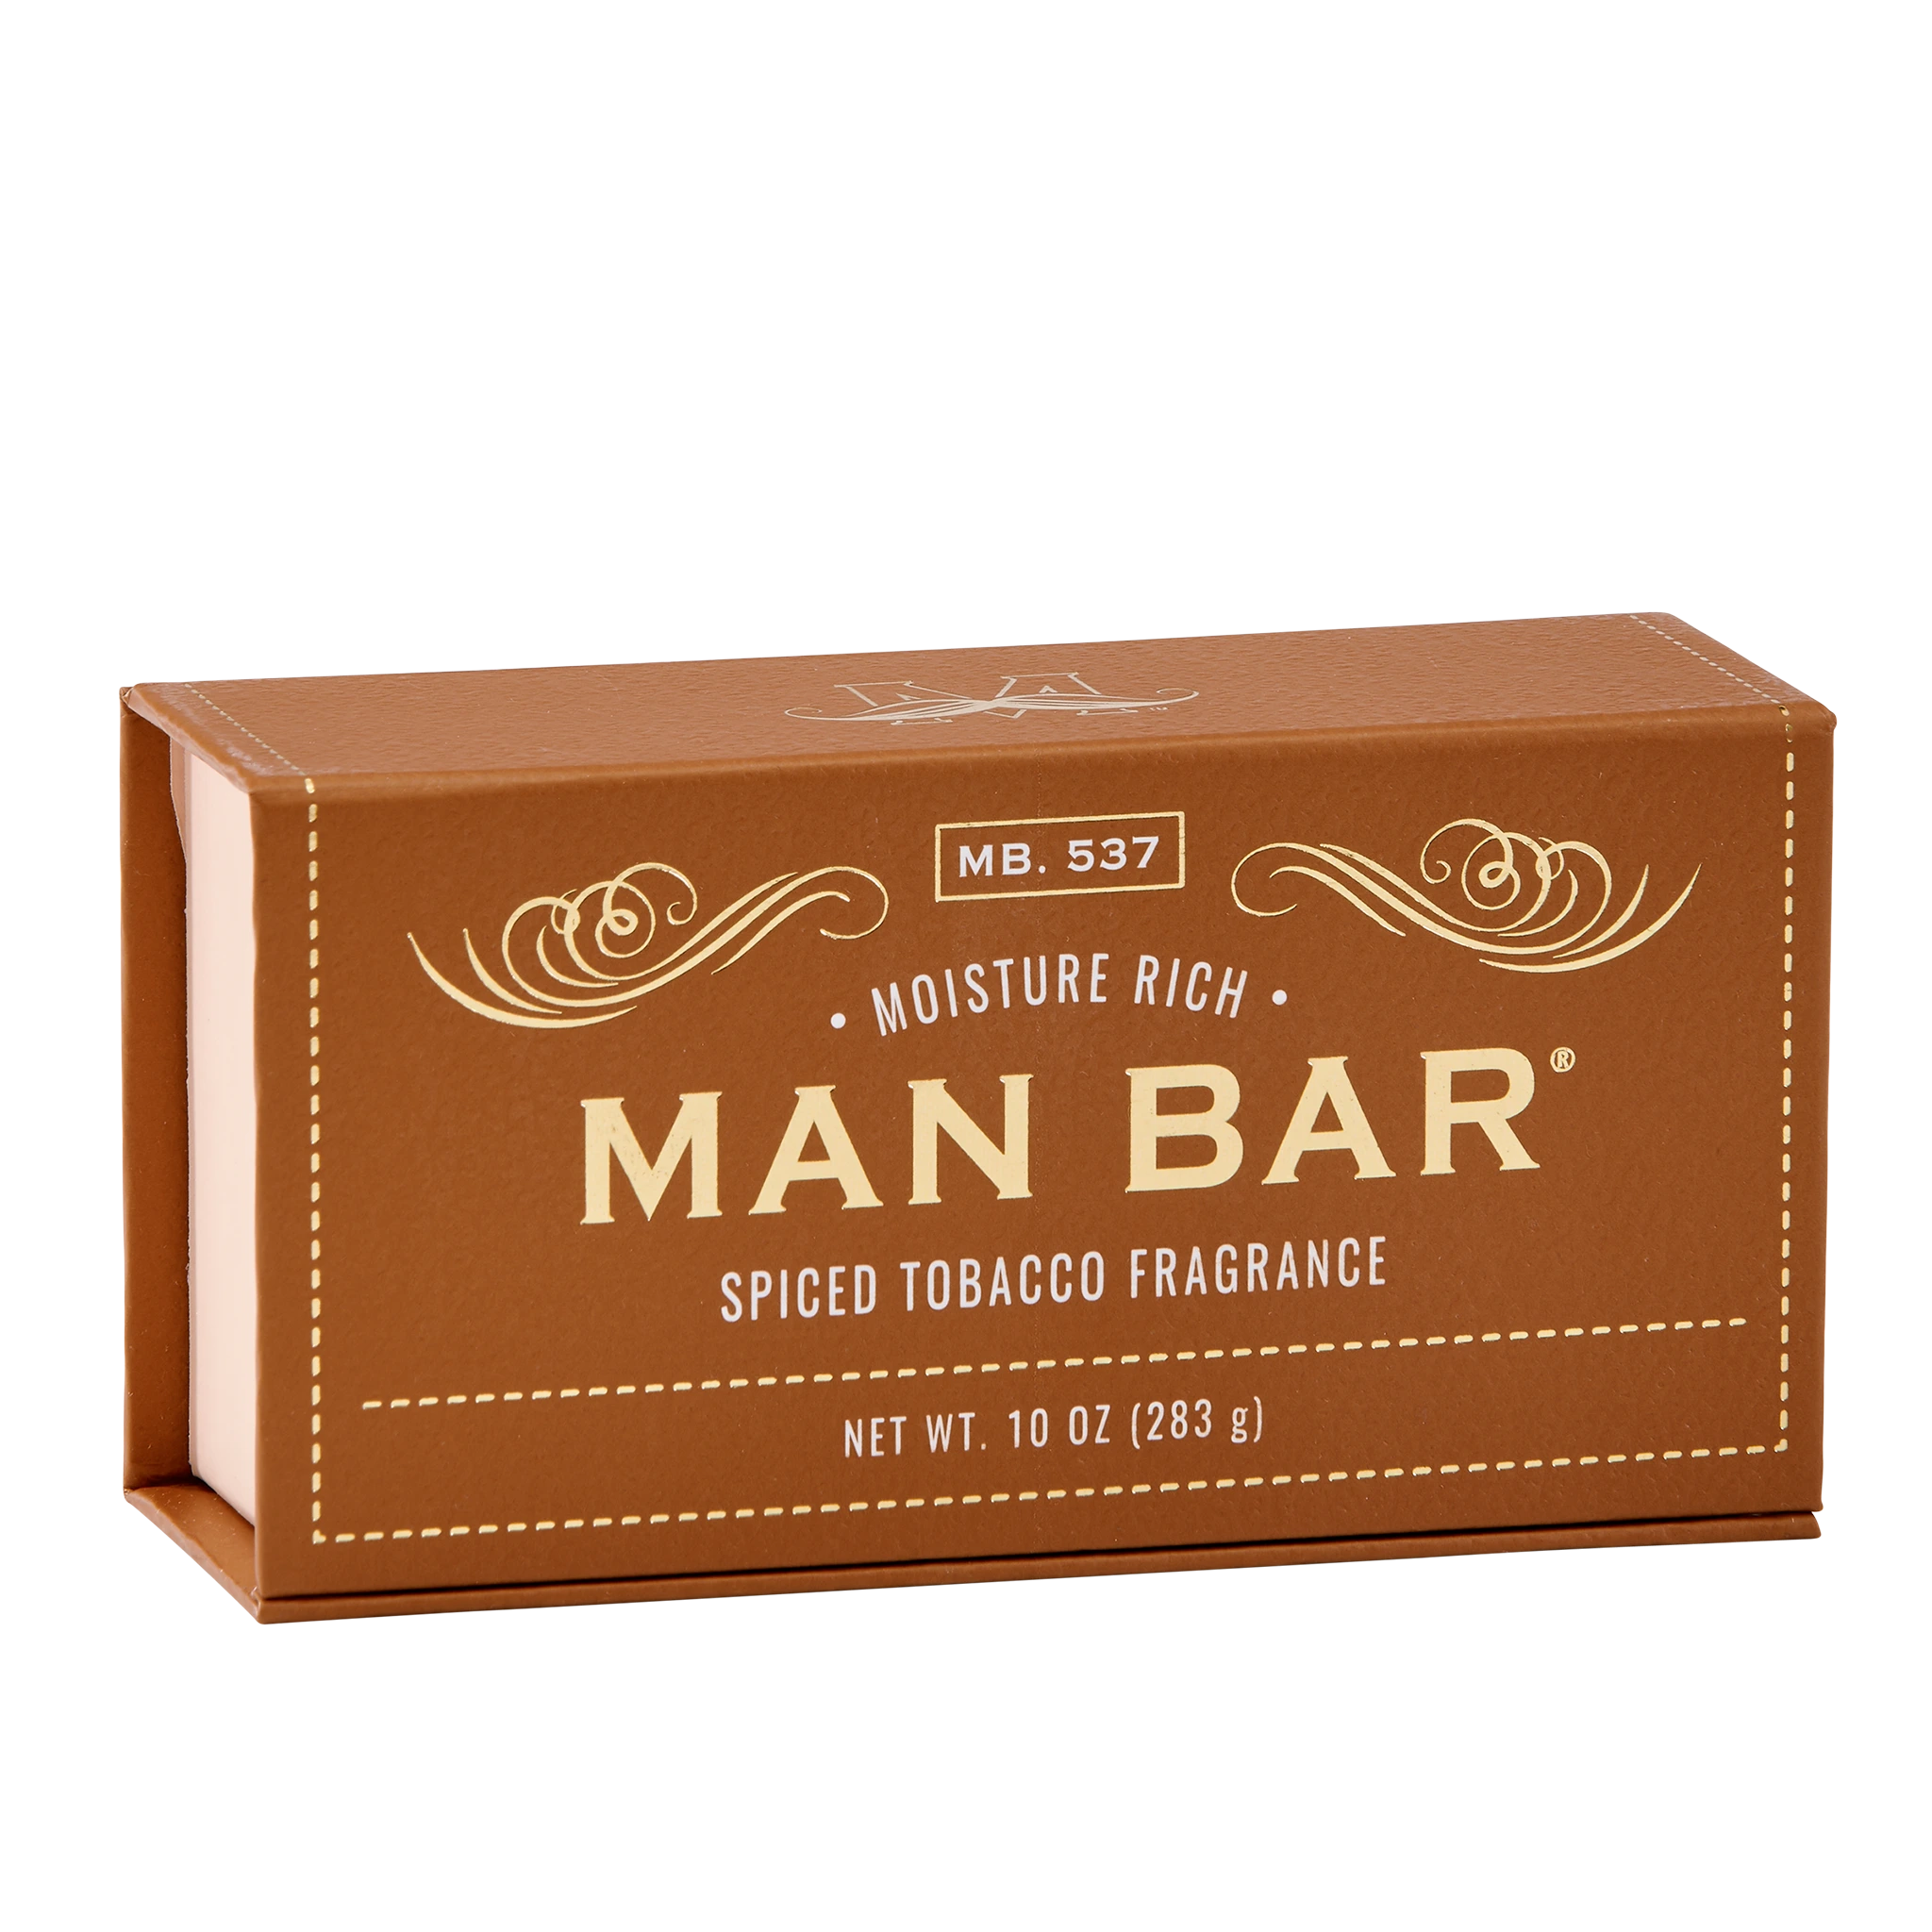 Man Bar Moisture Rich Spiced Tobacco soap box